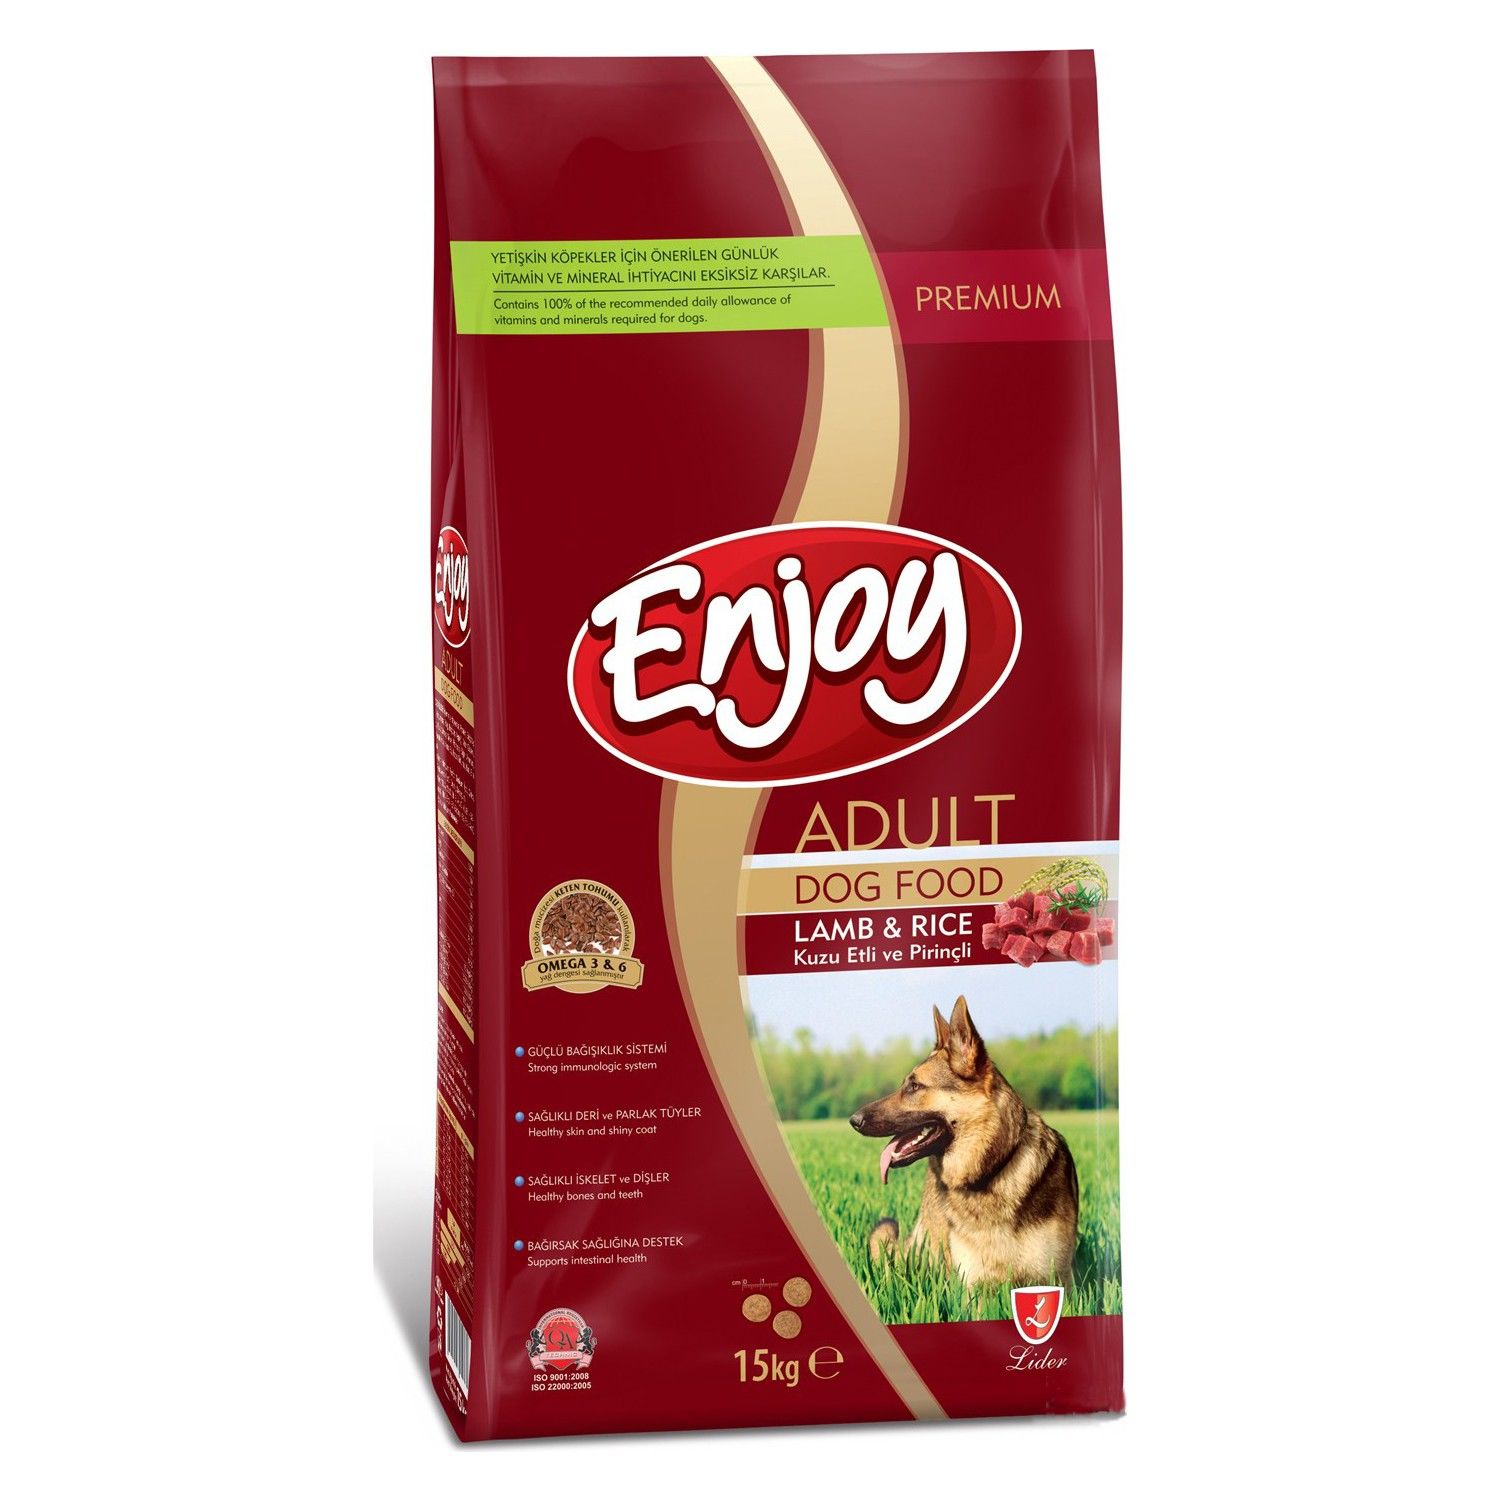 Enjoy Kuzu Etli Pirinçli Yetişkin Köpek Maması 15 Kg (Lamb & Rice) ENJ-06